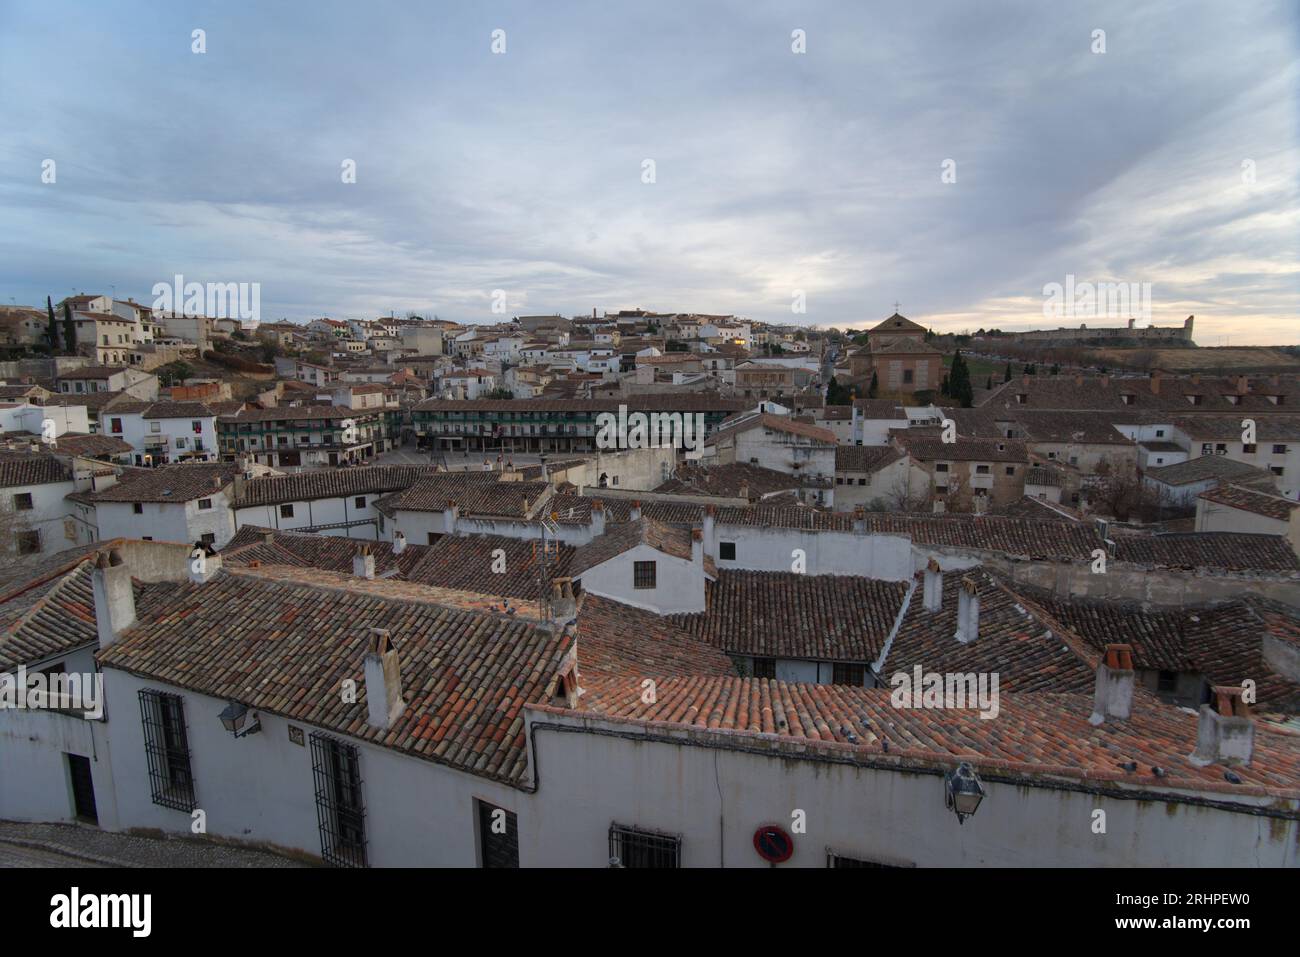 Rooftops of the town of Chinchón.  Tejados del pueblo ed Chinchón Stock Photo